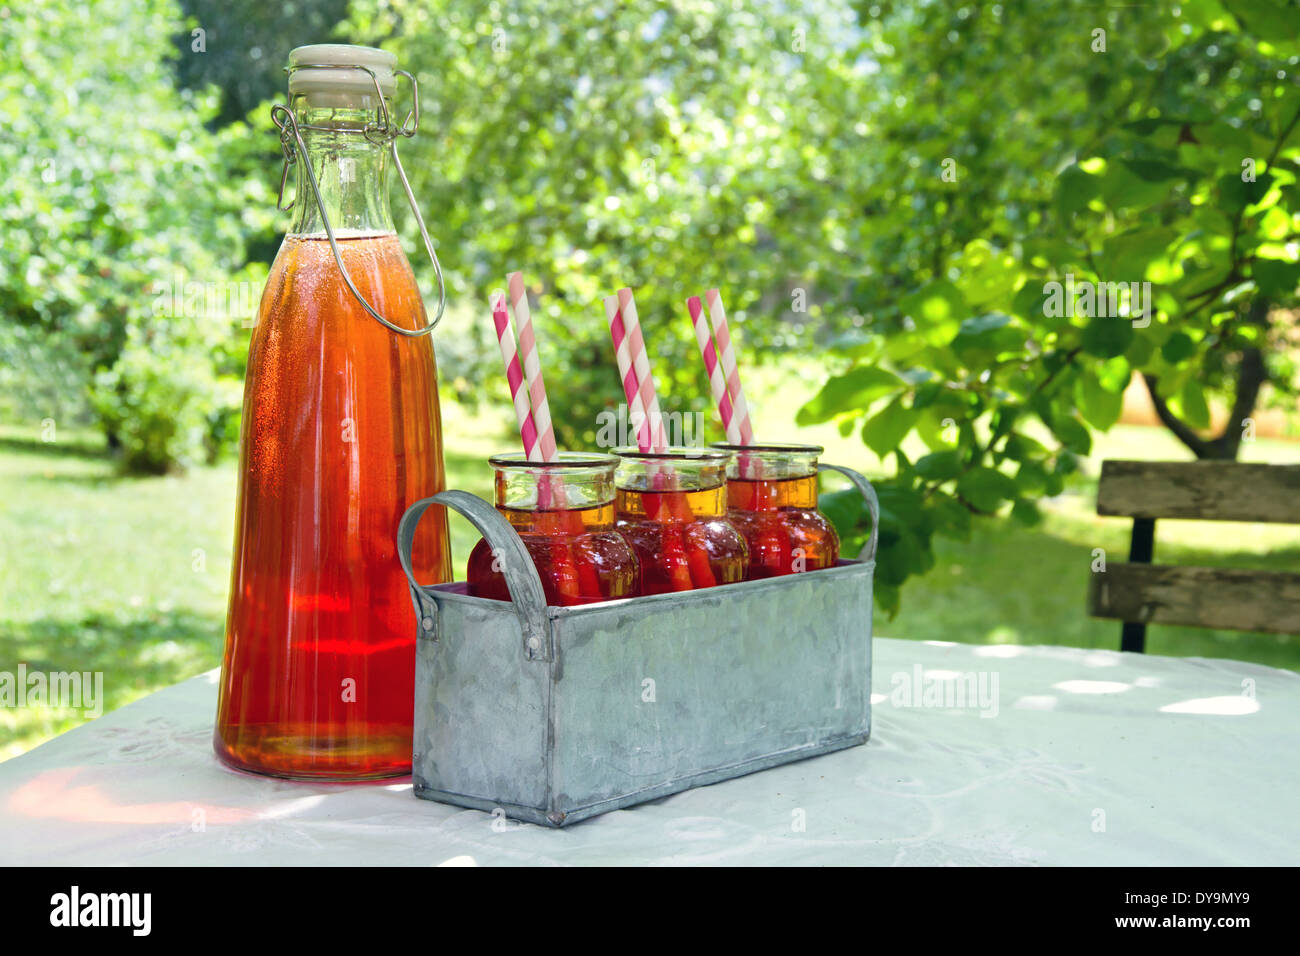 Verres de jus de fraise rouge avec des pailles à rayures en vert jardin d'été Banque D'Images